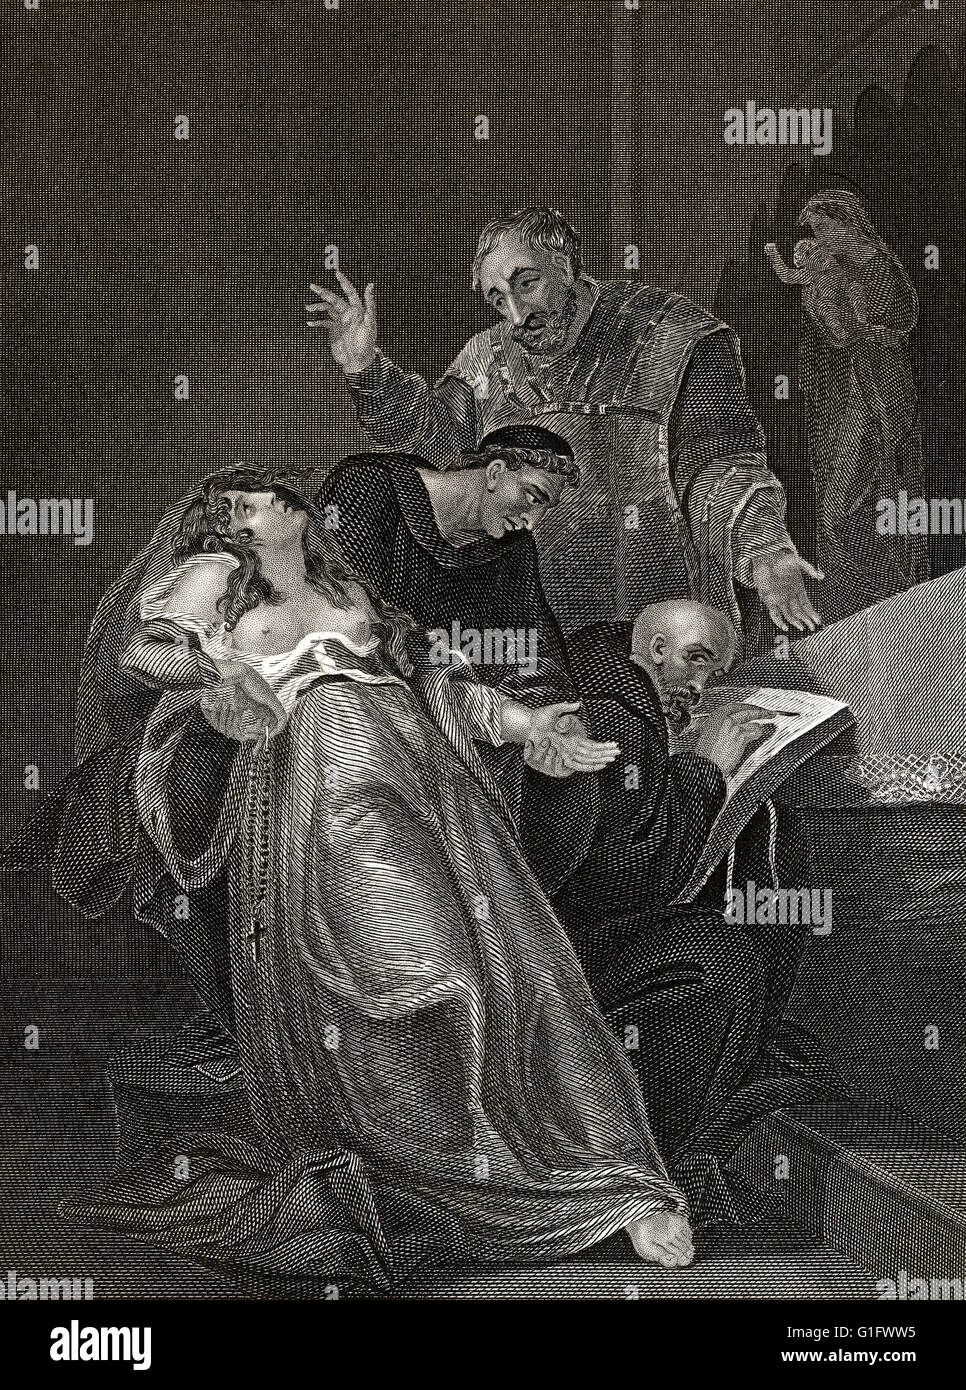 La femme de saint de Kent, Elizabeth Barton, souffrance interrogatoire dans les mains de 2 prêtres et un laïc Banque D'Images